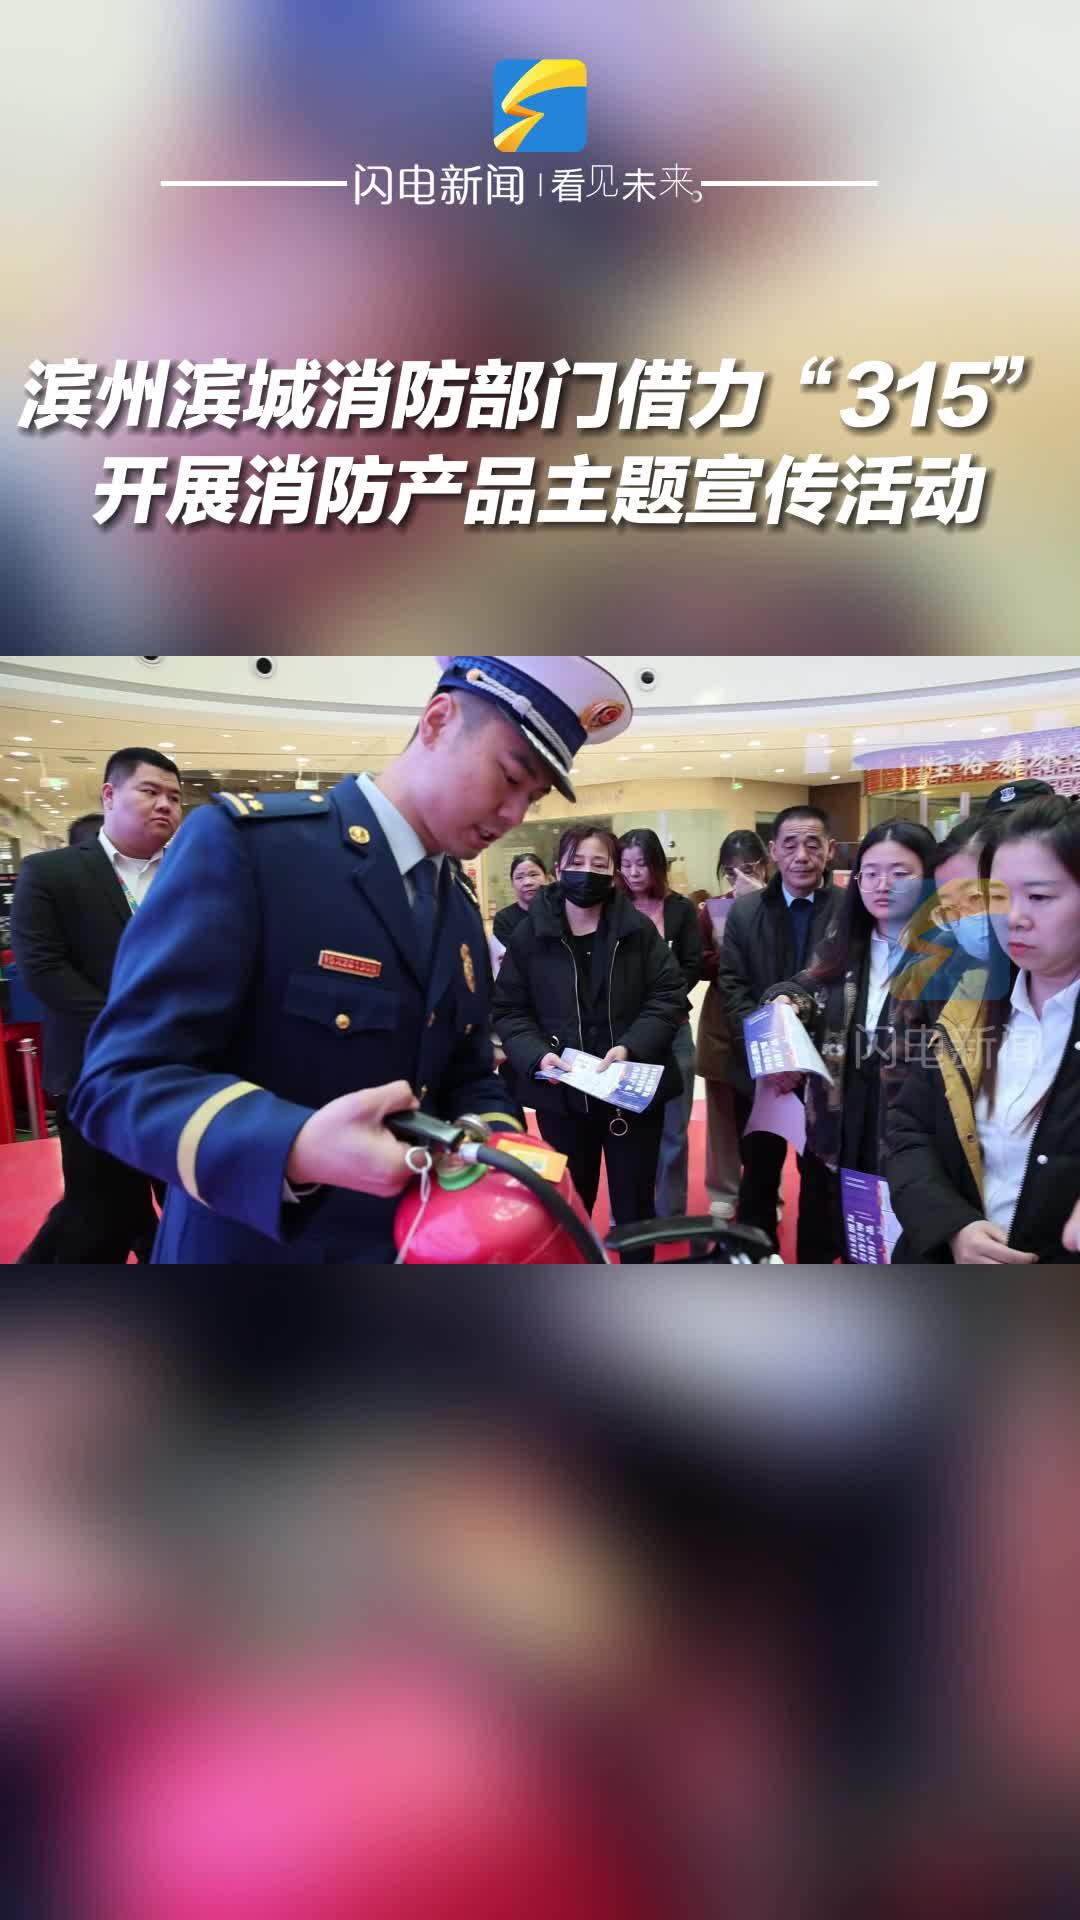 滨州滨城消防部门借力“315”开展消防产品主题宣传活动